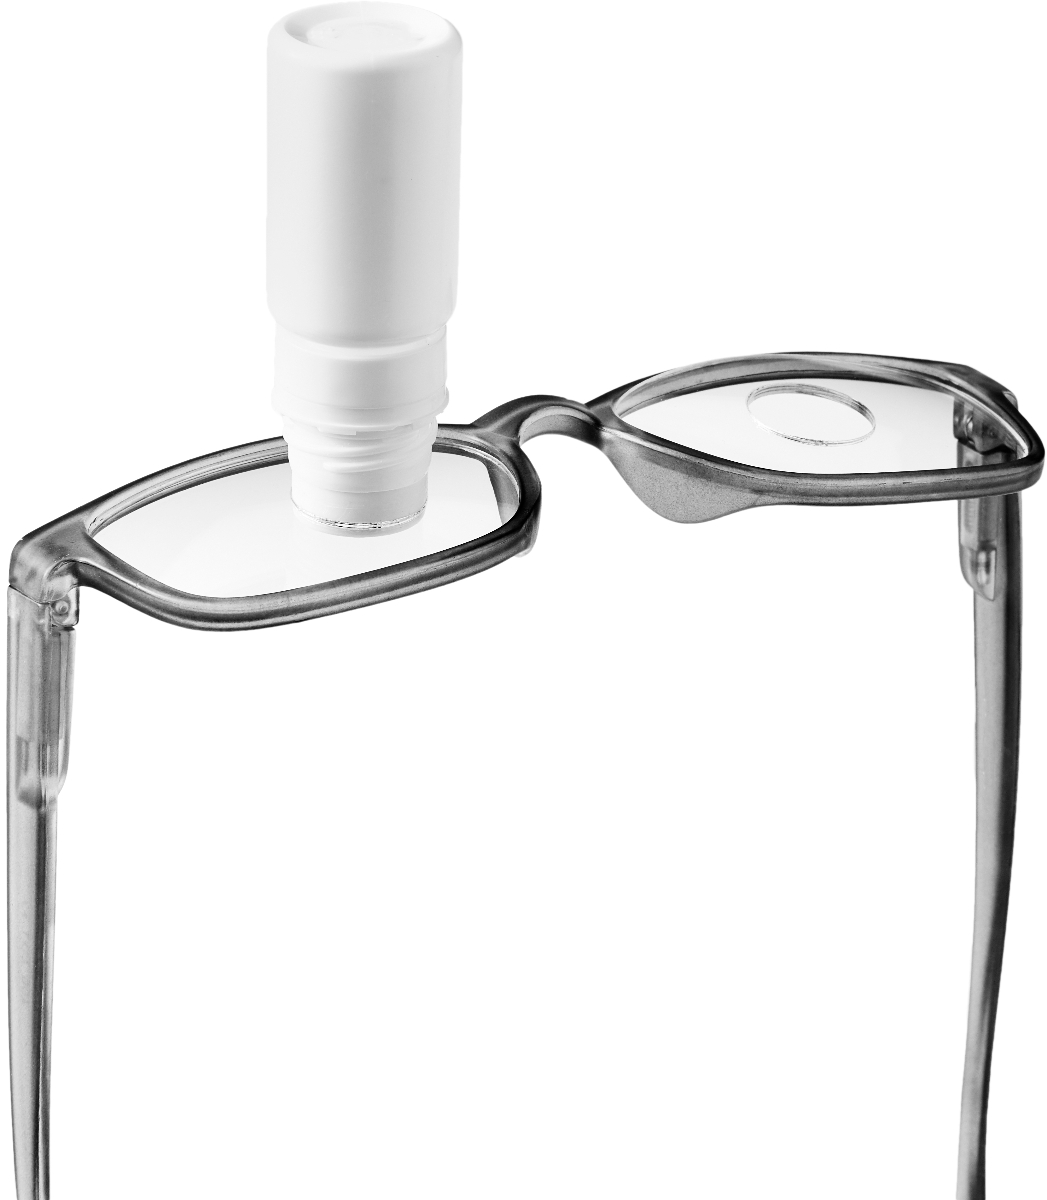 oogdruppelbril na staaroperatie